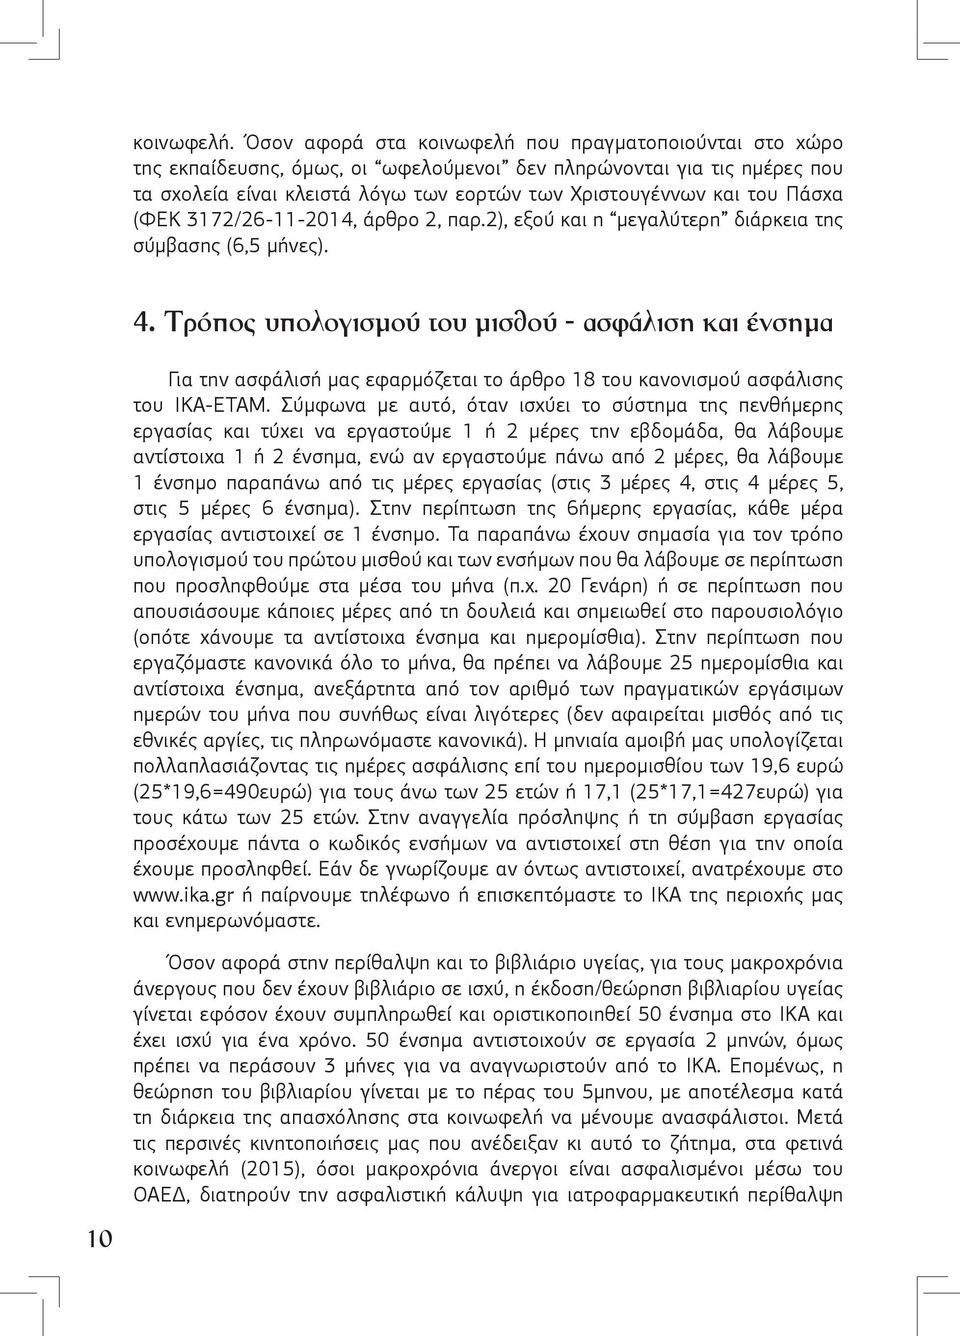 Πάσχα (ΦΕΚ 3172/26-11-2014, άρθρο 2, παρ.2), εξού και η μεγαλύτερη διάρκεια της σύμβασης (6,5 μήνες). 4.